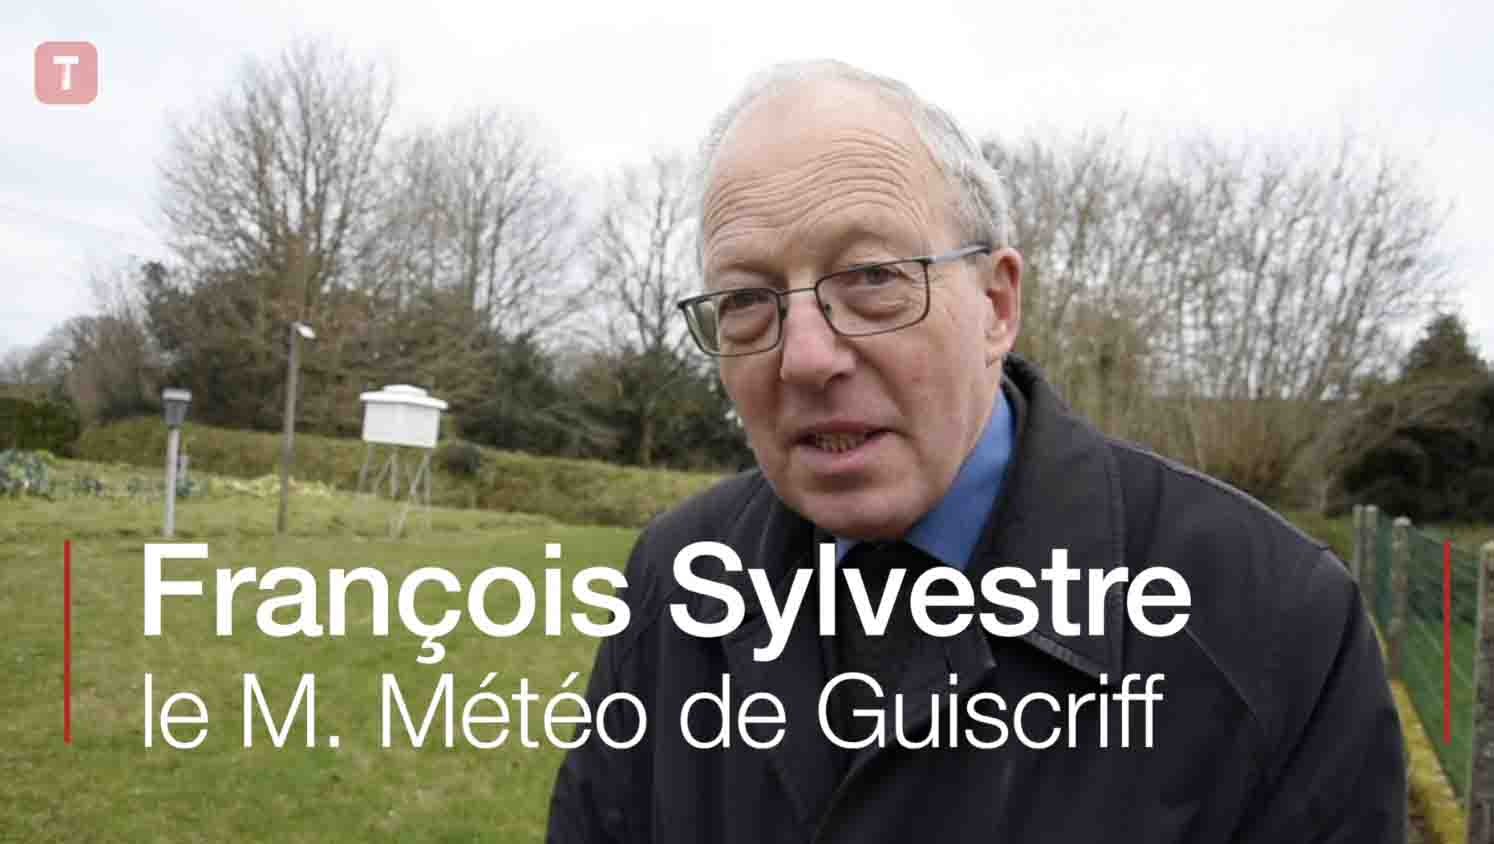  François Sylvestre le M. Météo de Guiscriff (Le Télégramme)